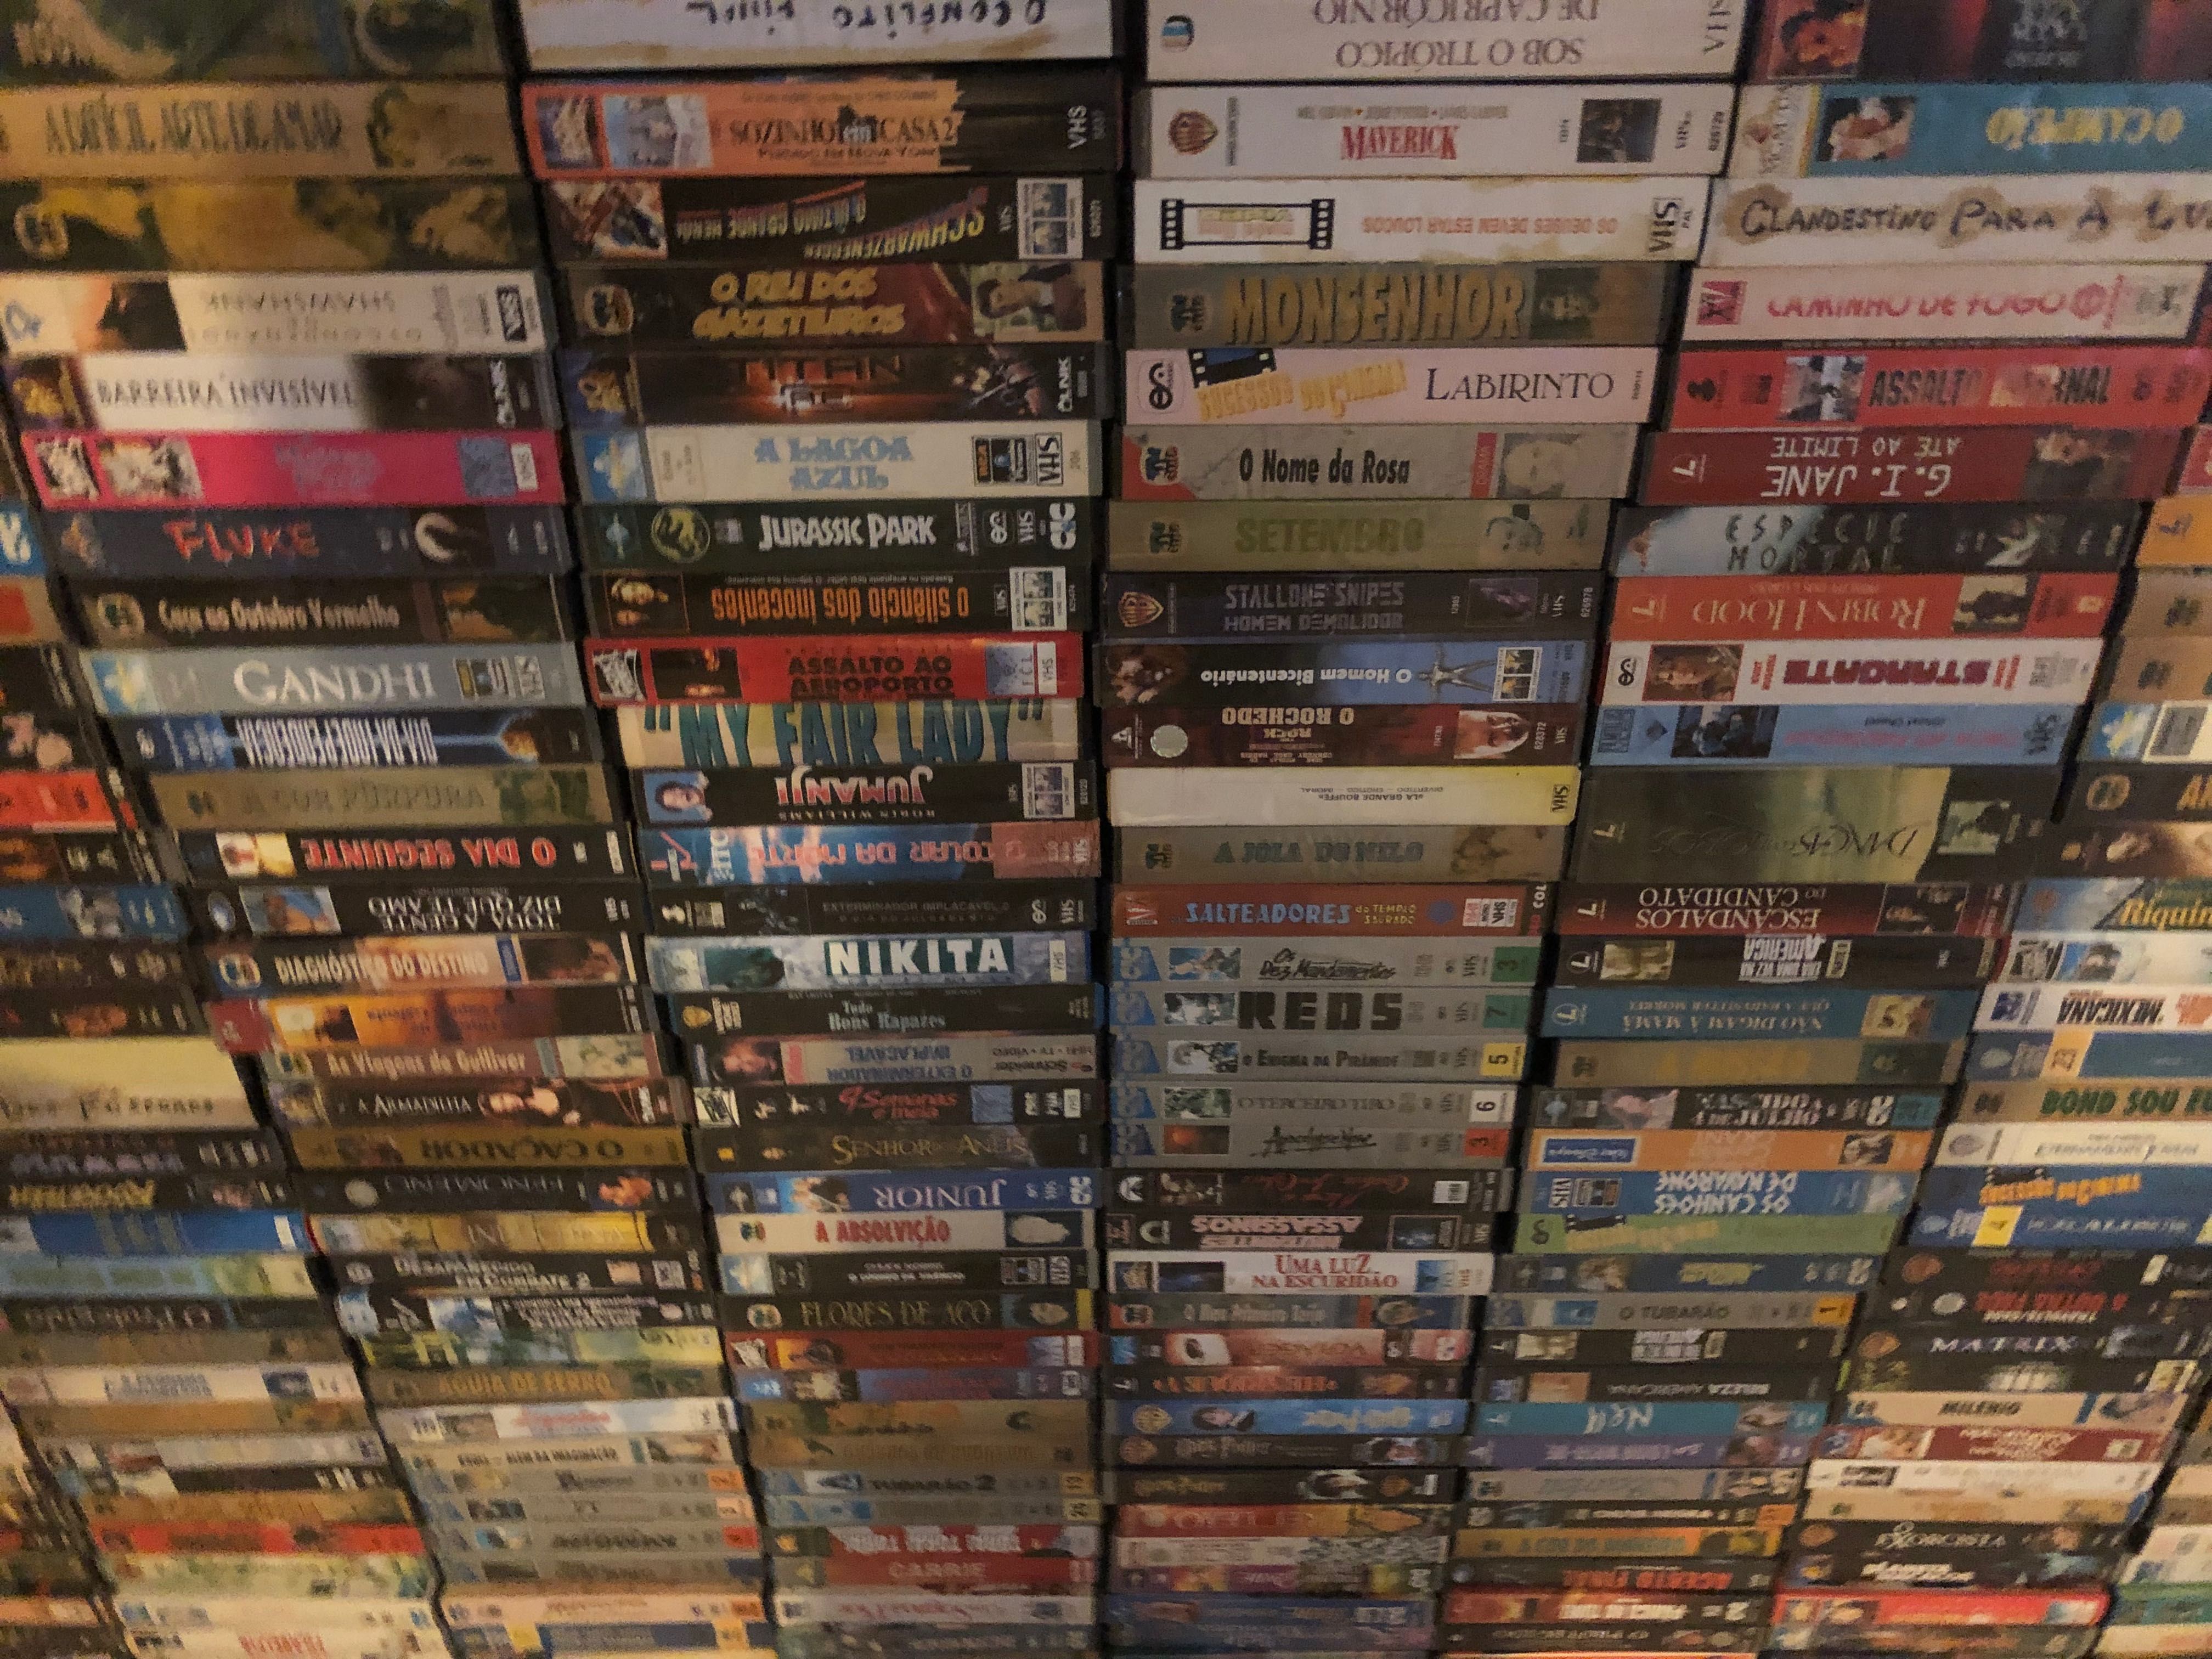 340 Filmes em cassetes VHS unidades bem conservadas